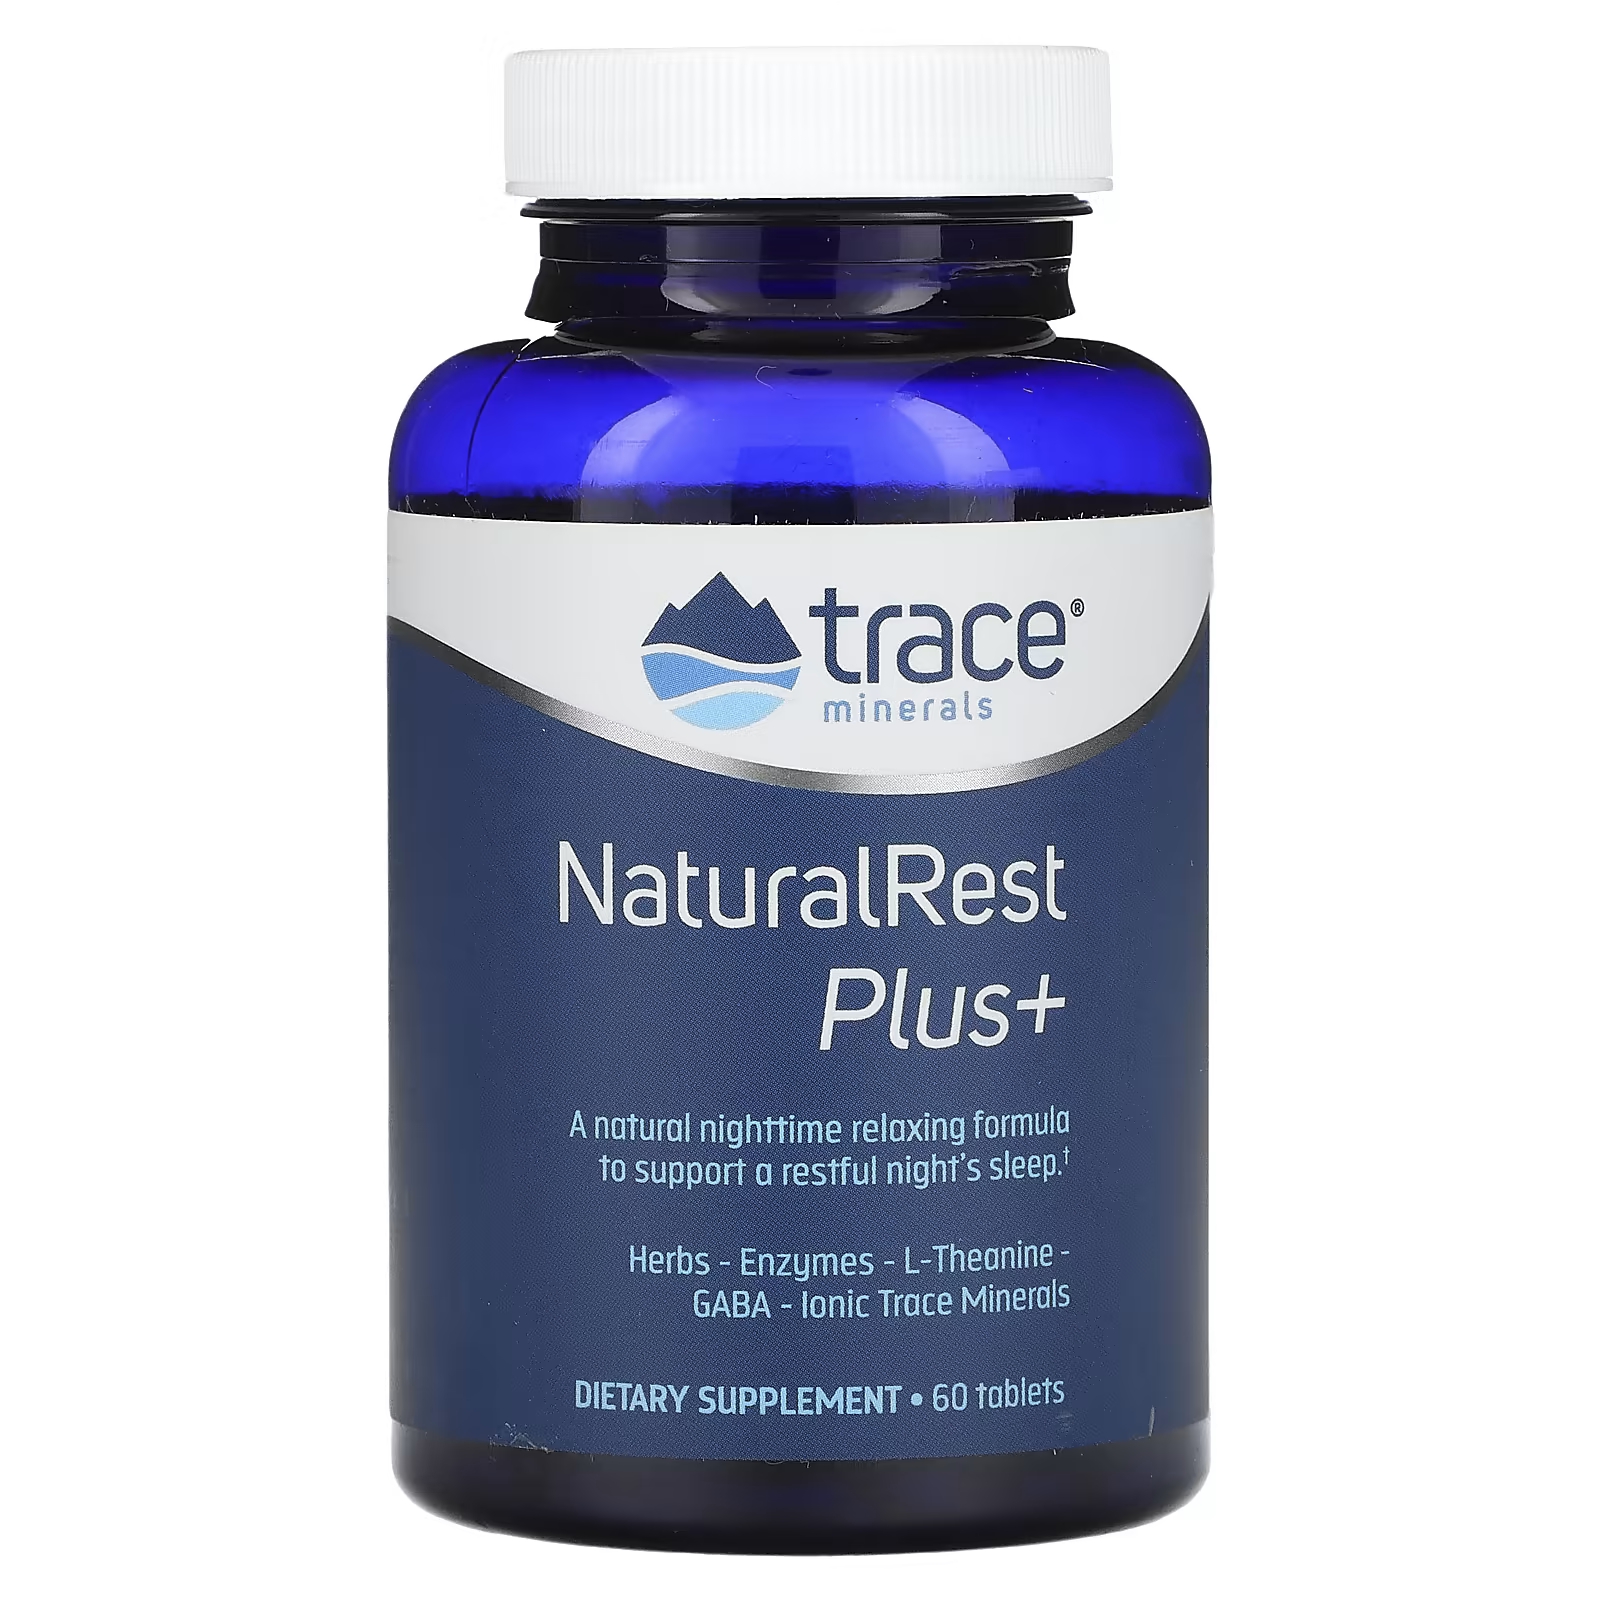 Пищевая добавка Trace Minerals NaturalRest Plus+, 60 таблеток l теанин 100мг life extension 60 капсул аминокислота для мозга сна нервной системы спокойствия для взрослых мужчин и женщин